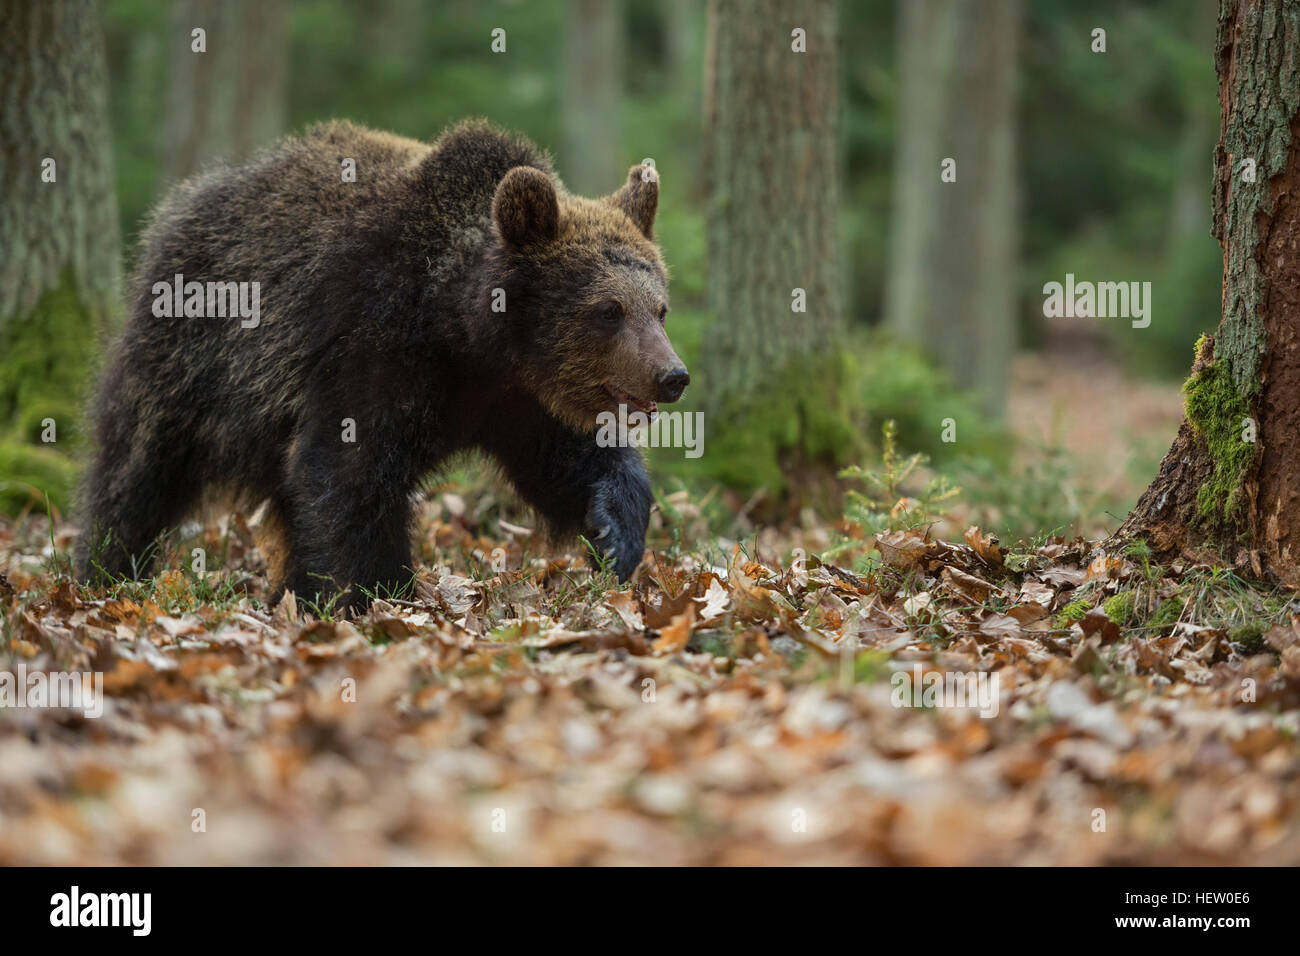 Ours brun européen / Braunbaer ( Ursus arctos ), les jeunes, randonnée pédestre / se promener à travers une forêt, d'explorer son environnement. Banque D'Images